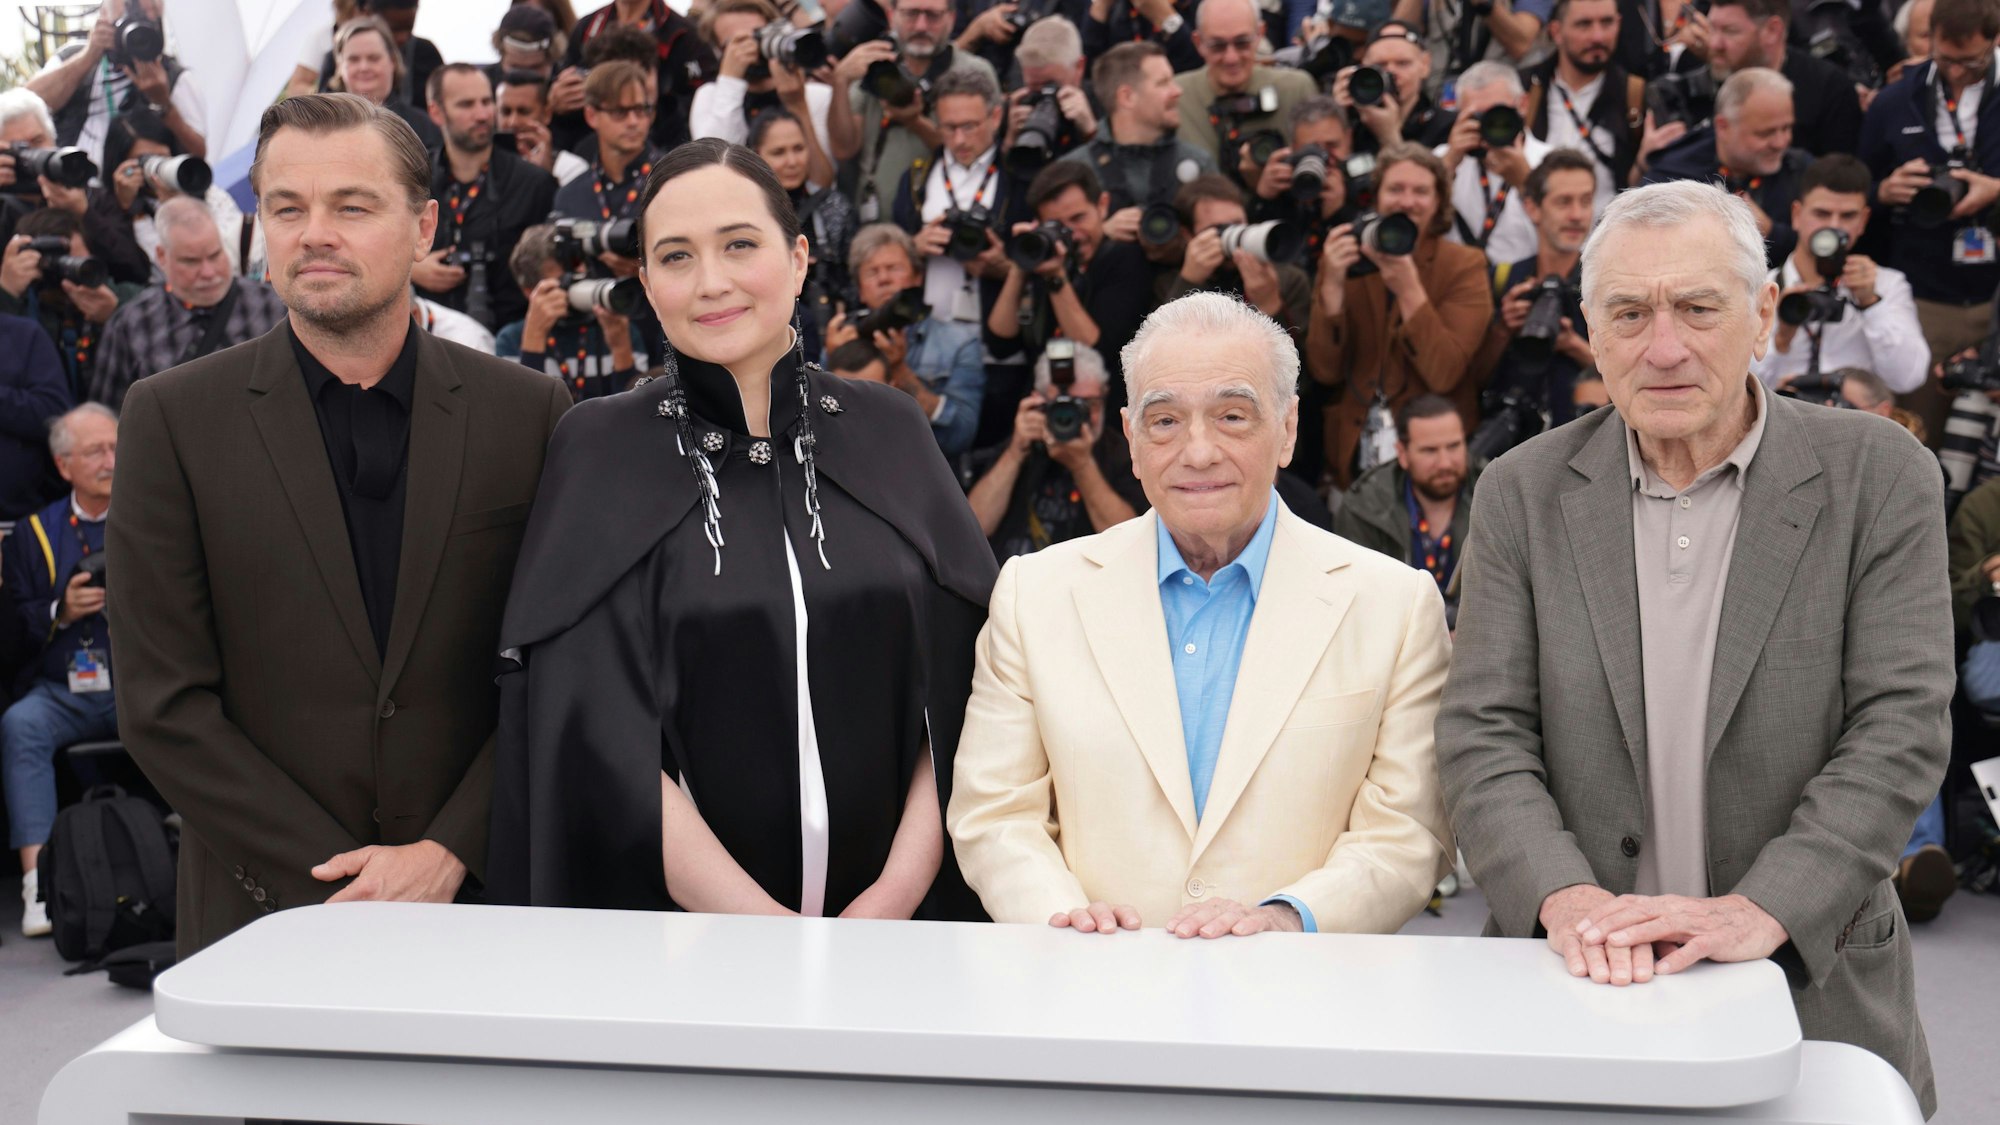 Die Schauspieler stehen nebeneinander in Cannes für einen Fototermin. Sie sind schick angezogen.